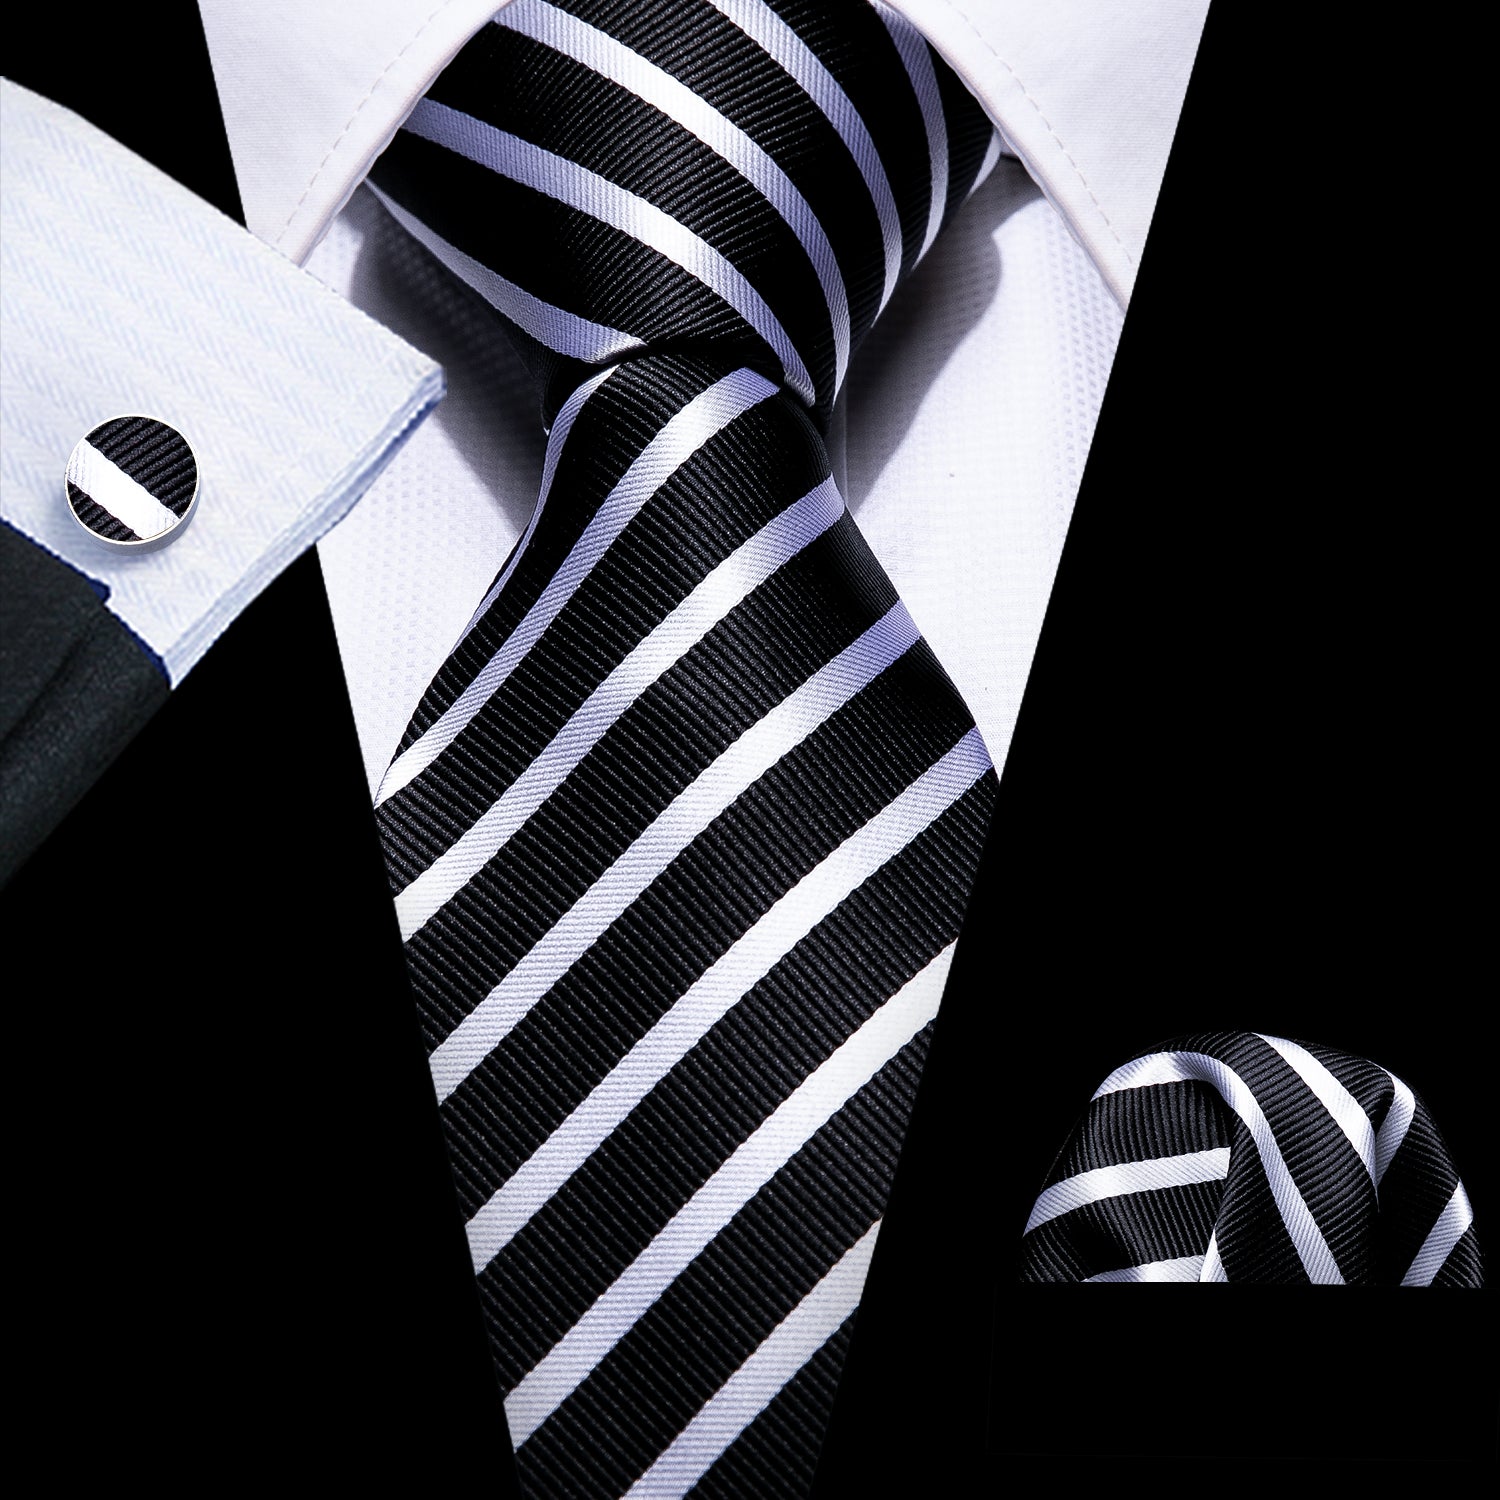 4PCS Black White Striped Silk Necktie Hanky Cufflinks Tie Clip Set